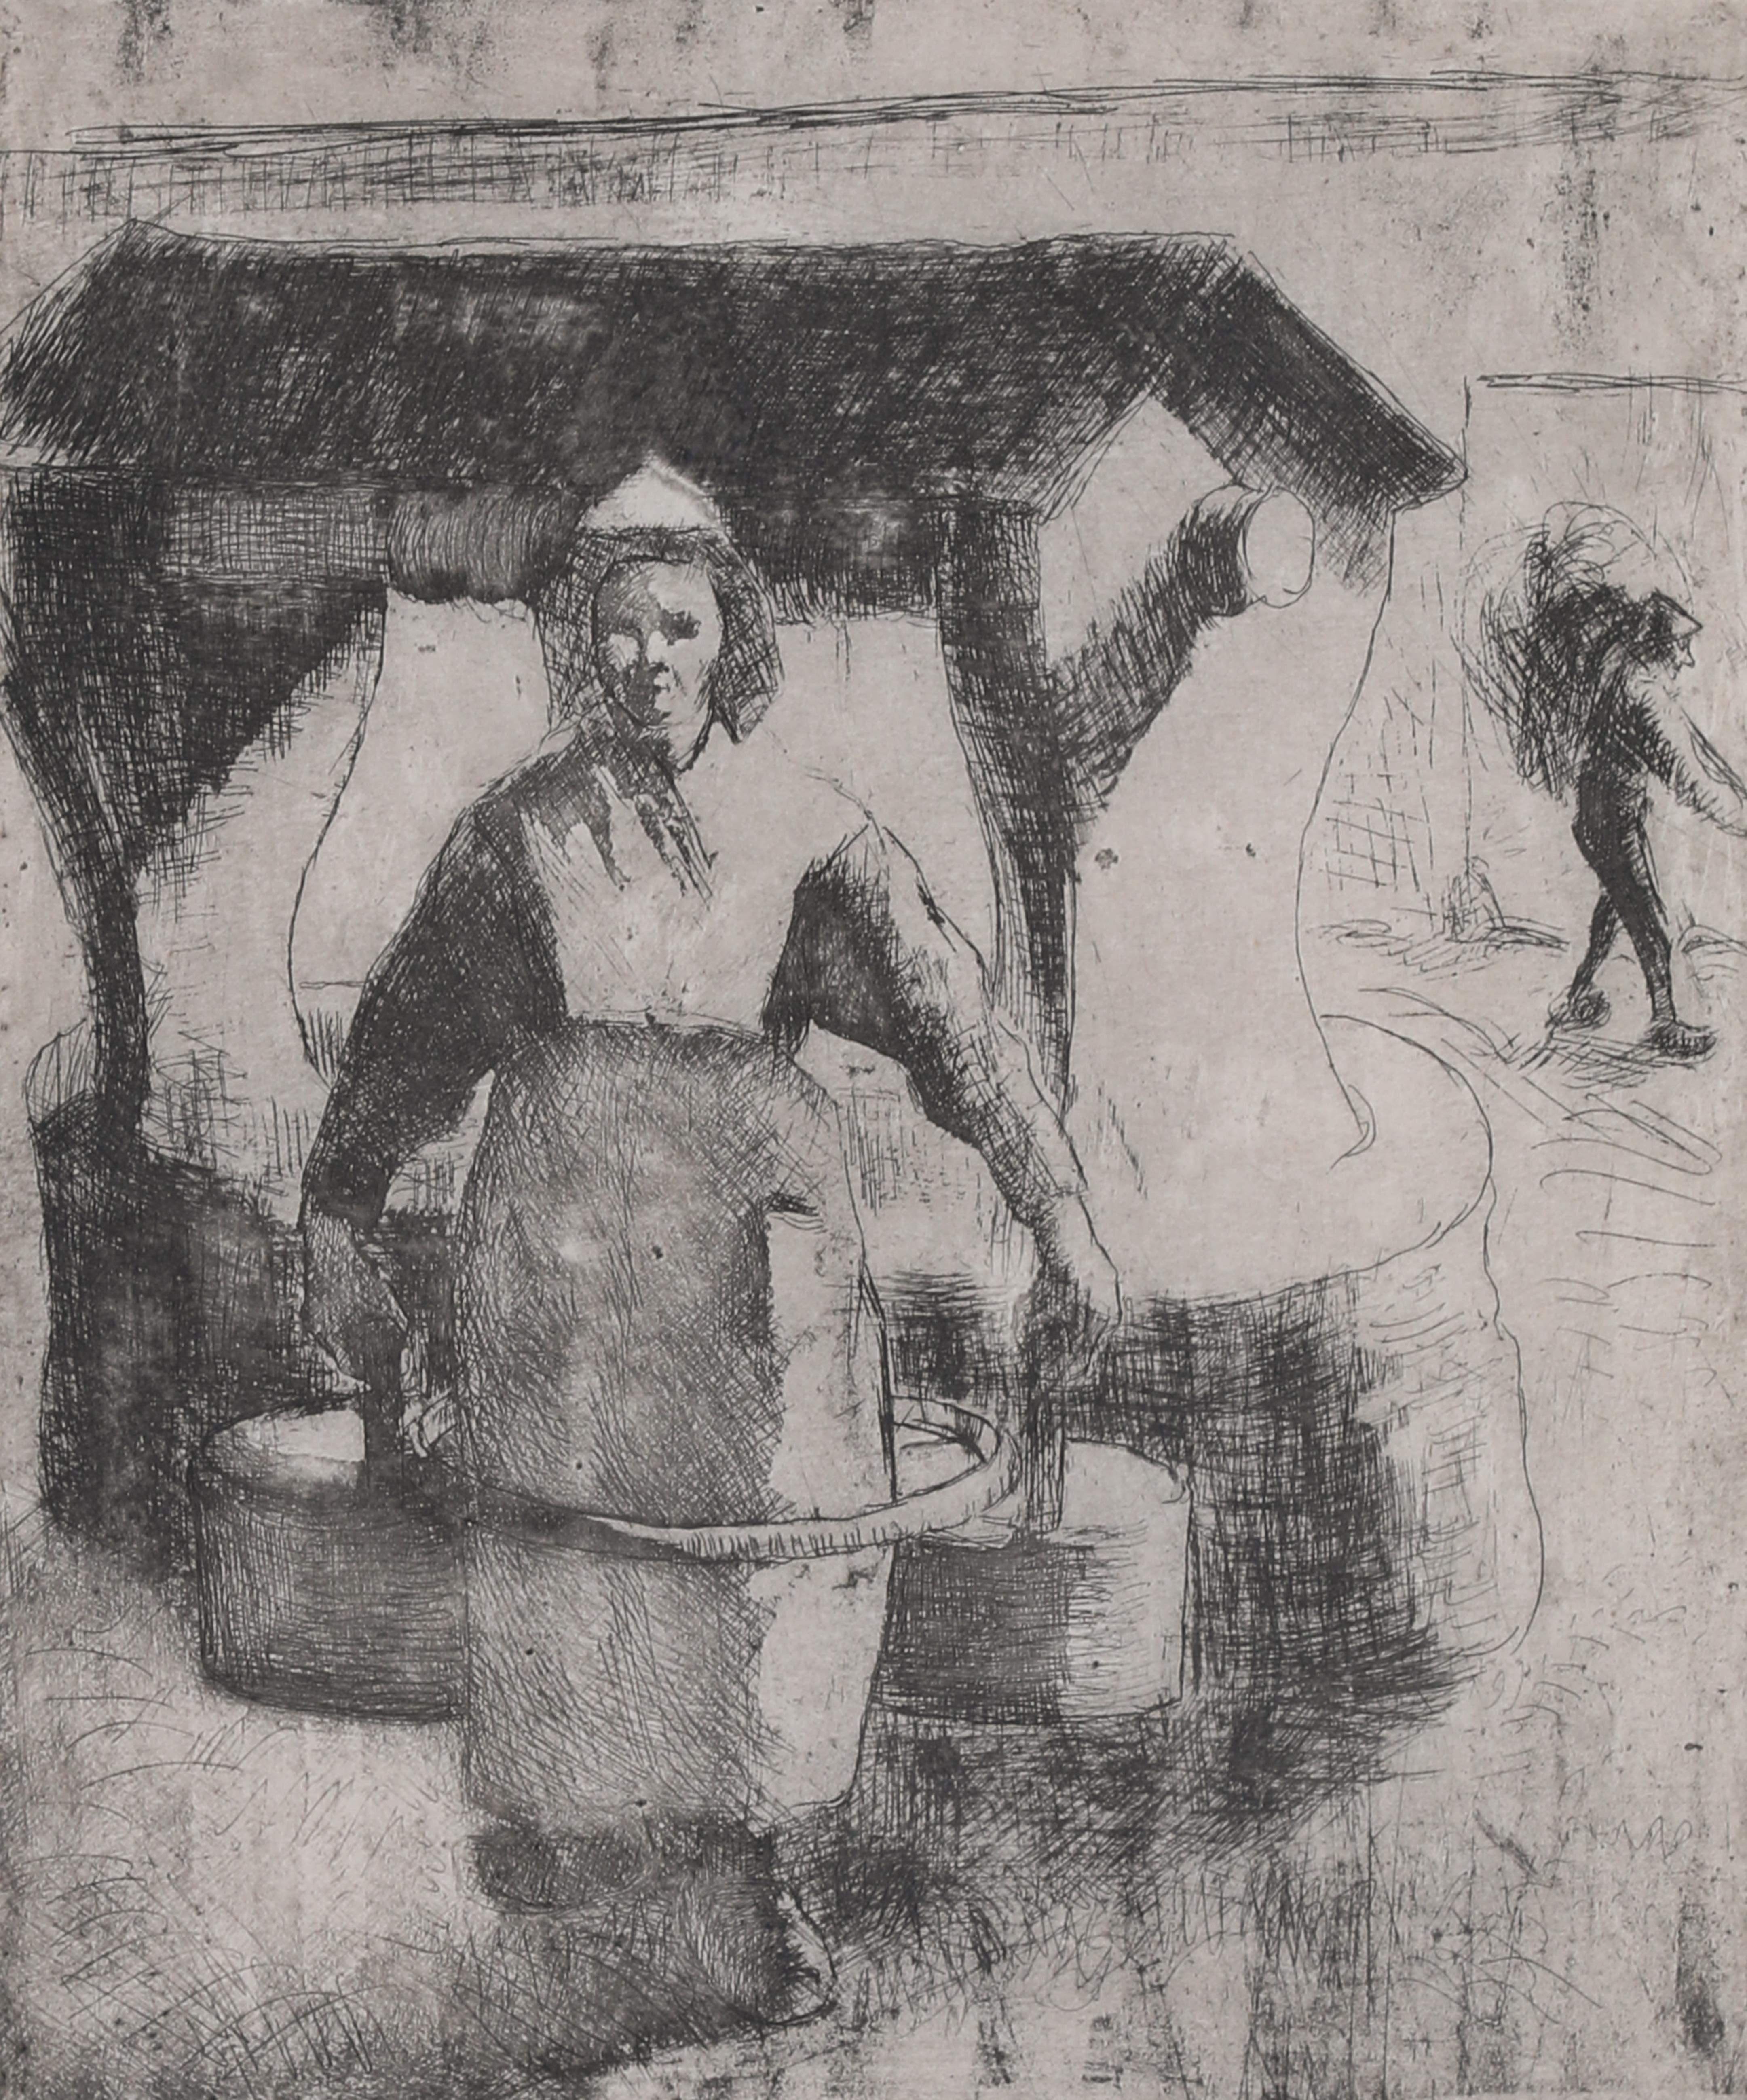 Was Camille Pissarro Black?